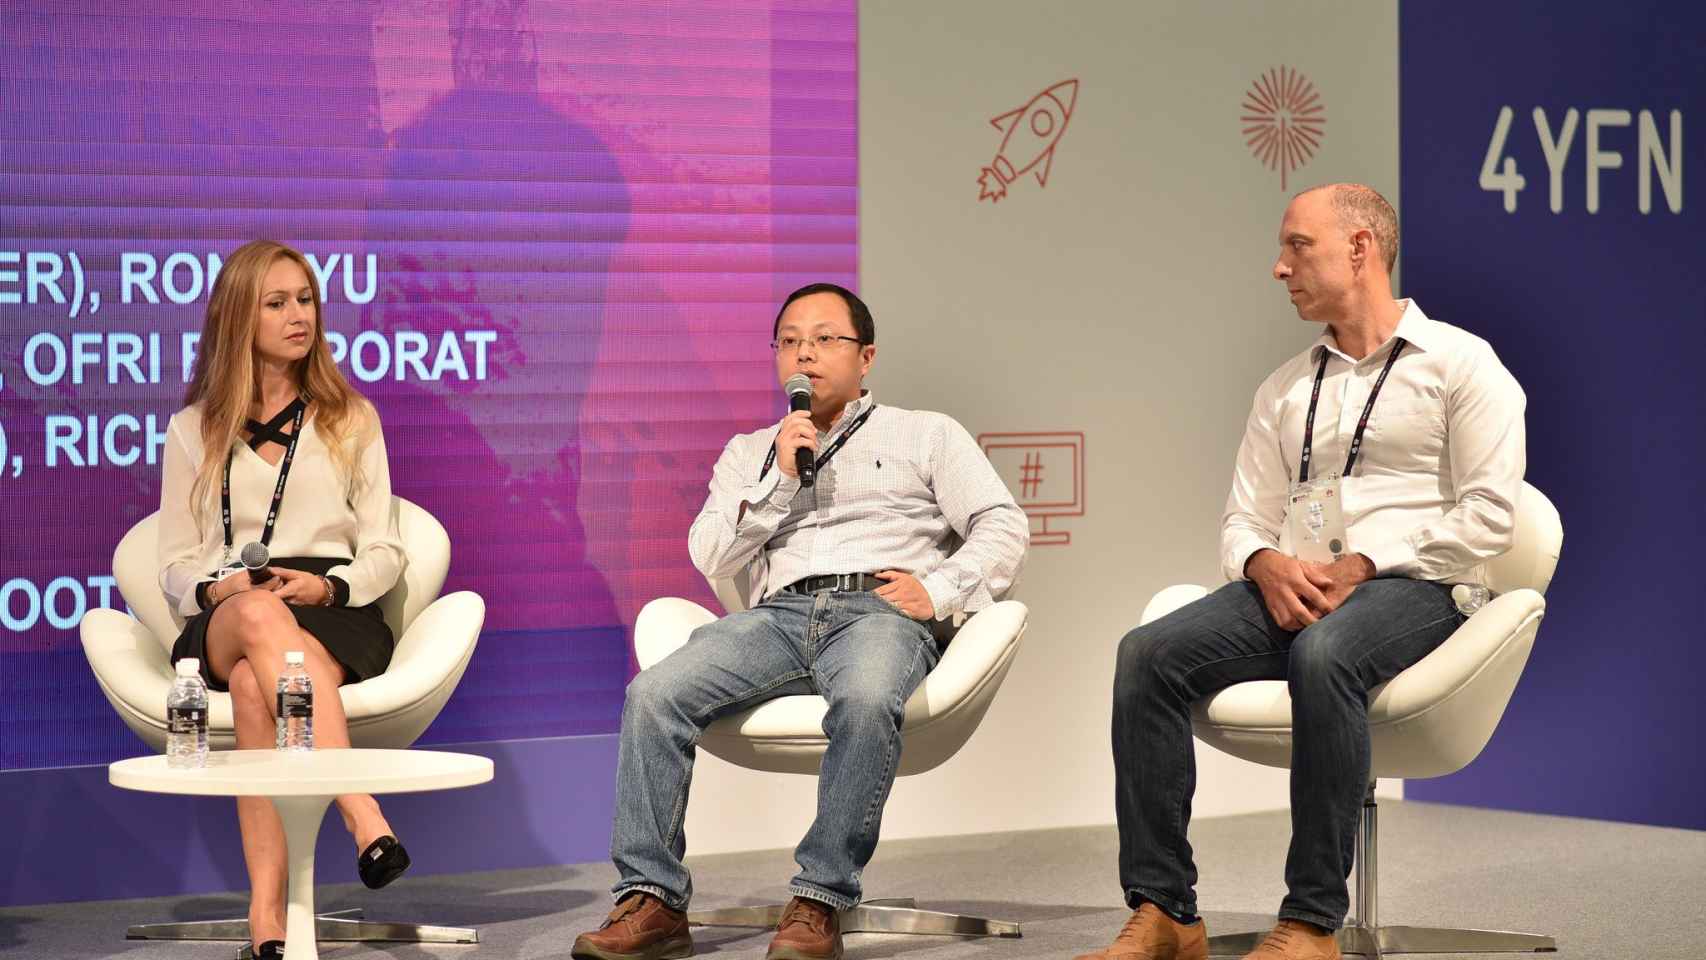 El 4YFN ha acompañado a 150 startups de todo el mundo al Mobile Congress de Shanghai / 4YFN